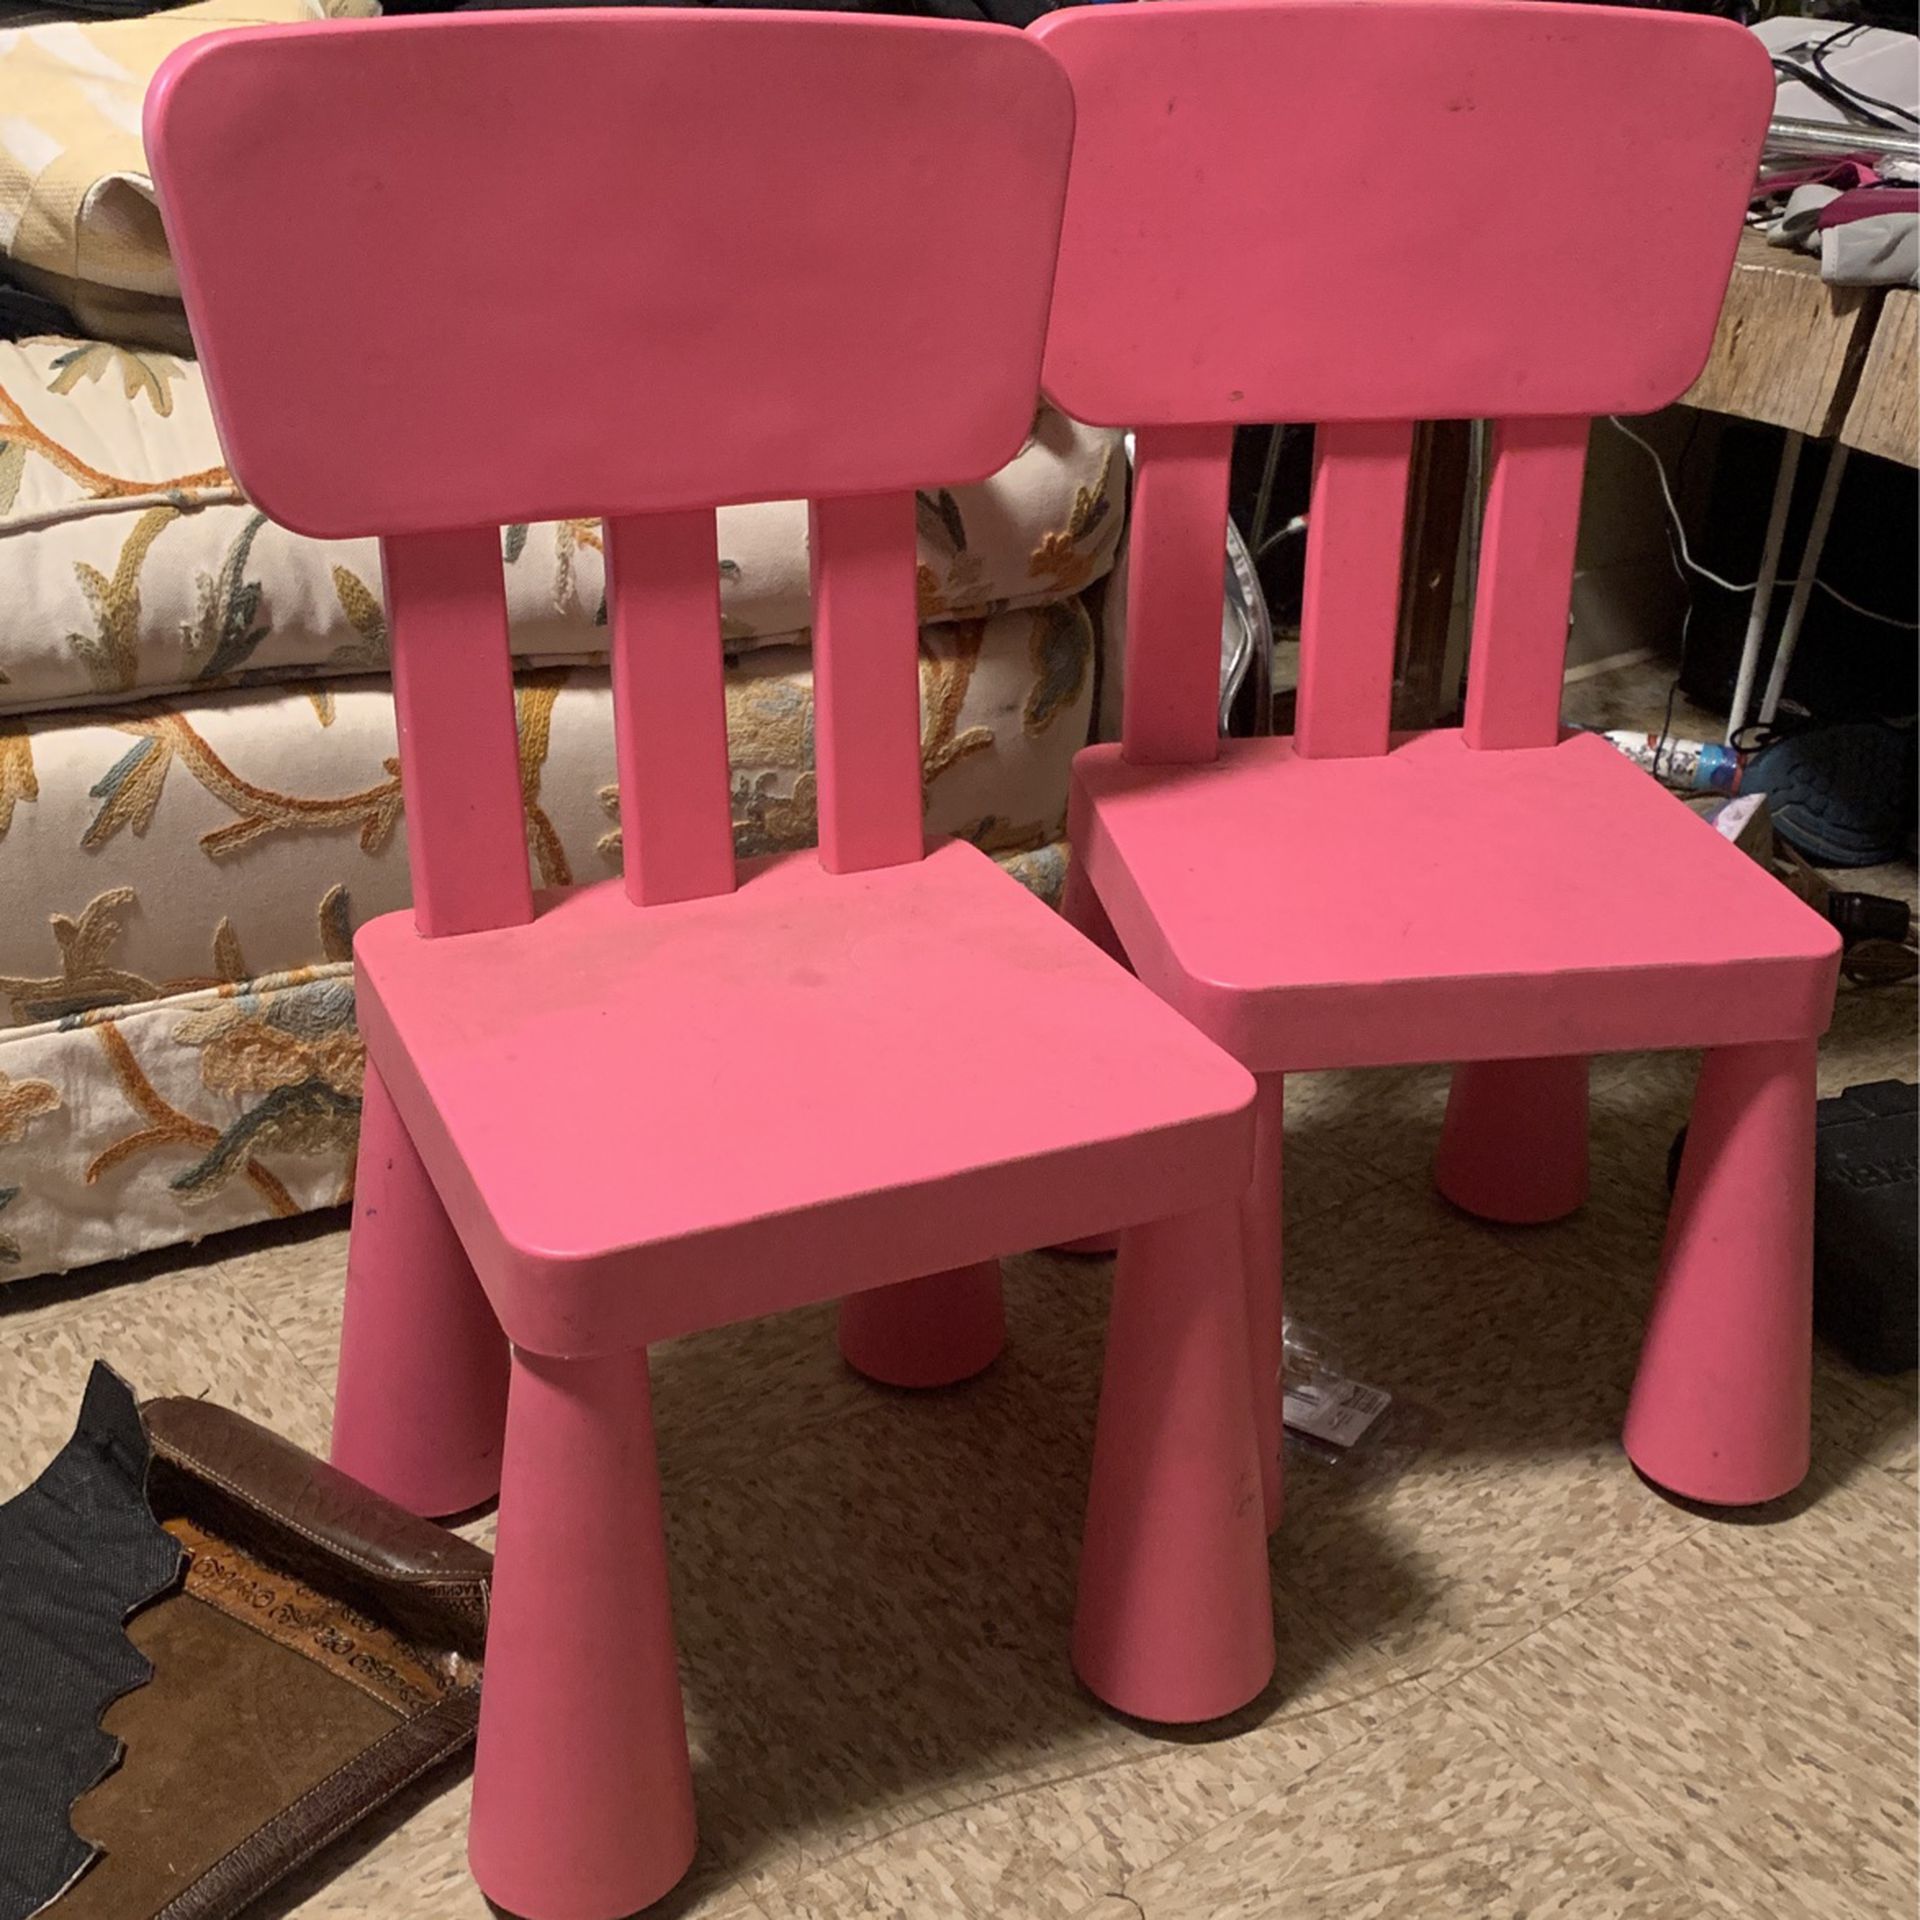 2 Pink Children Chairs